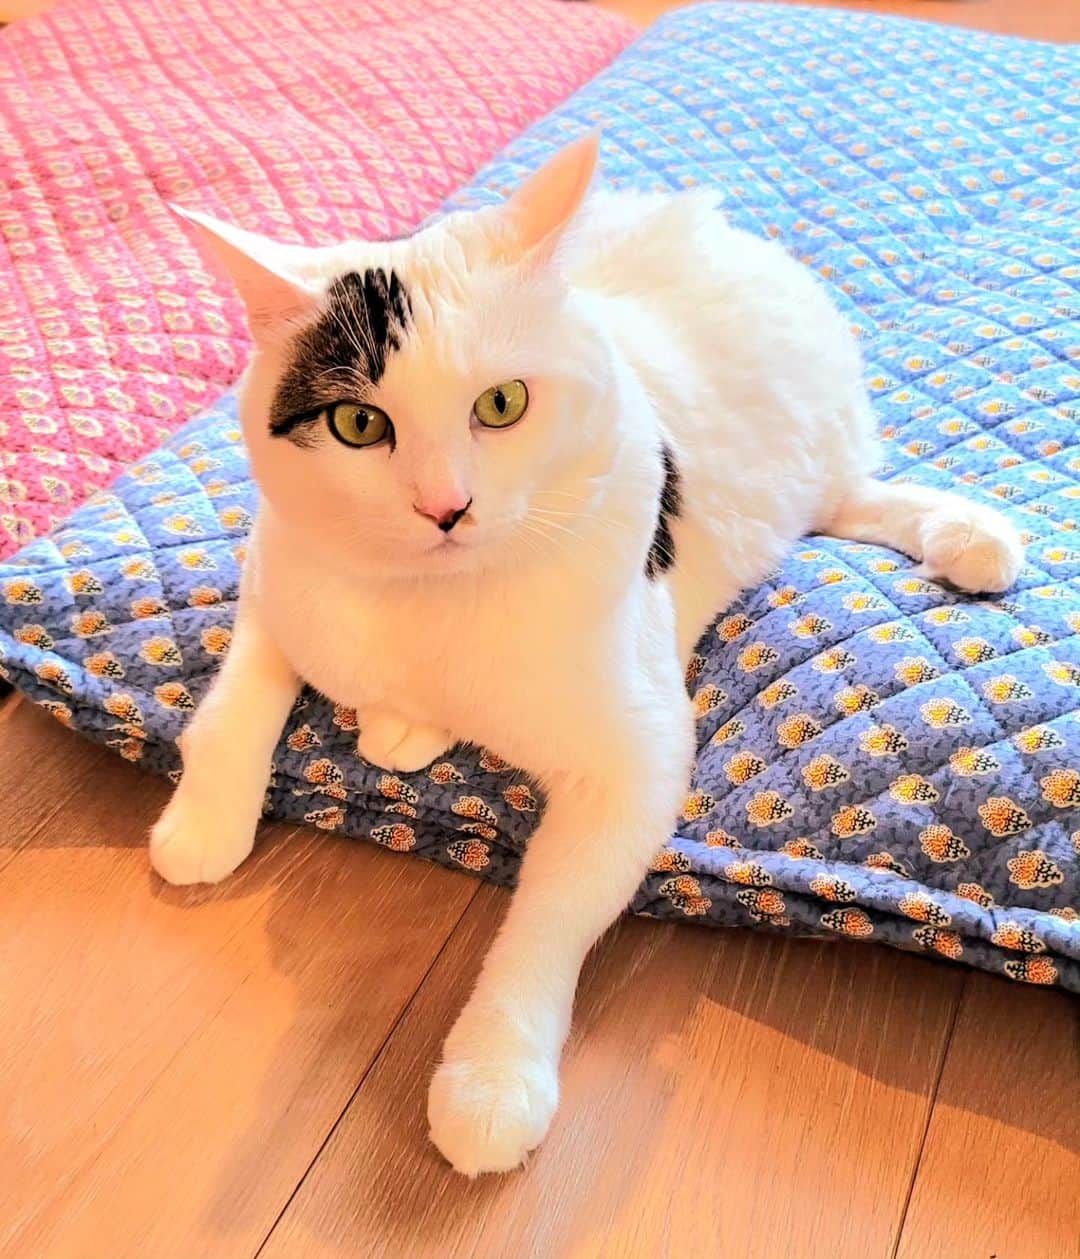 hoshino katsuraのインスタグラム：「三太のふるさとである熊本のチームにゃわんさん( @nyawan_kumamoto )のところでは下半身不随猫ちゃんやハンディキャップのある猫ちゃんたちの里親がなかなか見つからず、キャパシティが限界を迎えています。⁡ ⁡⁡ ⁡ハンディキャップがある猫ちゃんは世話が大変だというイメージが強いかと思いますが、ハンディキャップがあるからといって健常猫ちゃんより手がかかるとは限りません。⁡ ⁡⁡ ⁡ハンディキャップがあるからこそ、世話しやすい所もありますし、何より彼らはとても個性的で、たくましく、その姿から学びと癒しを必ずもらえます。⁡ ⁡⁡ ⁡もし、猫ちゃんを迎え入れたいと考えている方がいらっしゃいましたら、チームにゃわんさん( @nyawan_kumamoto )の投稿を見てみて欲しいです。⁡ ⁡⁡ ⁡熊本の団体さんですが、里親は県外からの問い合わせも可能だそうです。⁡ ⁡⁡ ⁡ハンディキャップの猫ちゃんを世話することに不安がある、という方はこちらにコメントをくだされば、私が分かる範囲で答えさせていただきます。⁡ ⁡⁡ ⁡私は下半身不随のサンチョロとの生活がとてもとても楽しいです。⁡⁡ ⁡ ⁡ハンディキャップは全てがネガティブではありません。⁡ ⁡⁡ ⁡健常猫ちゃんとなんら変わらず愉快に愛らしく生きる姿をぜひ知ってもらいたいです。⁡ ⁡⁡ ⁡⁡ ⁡⁡ ⁡#teko家卒猫 #下半身不随猫三太 #下半身不随猫チョロ #サンチョロ #哀れなリスナーにサンチョロの祝福を #下半身不随猫 #下半身不随猫と暮らす #圧迫排尿猫 #圧迫排尿  #cat #rescuecat #ねこ #保護猫 #負傷猫 #熊本市動物愛護センター出身 #teko家の犬猫たち#花の木シェルター」